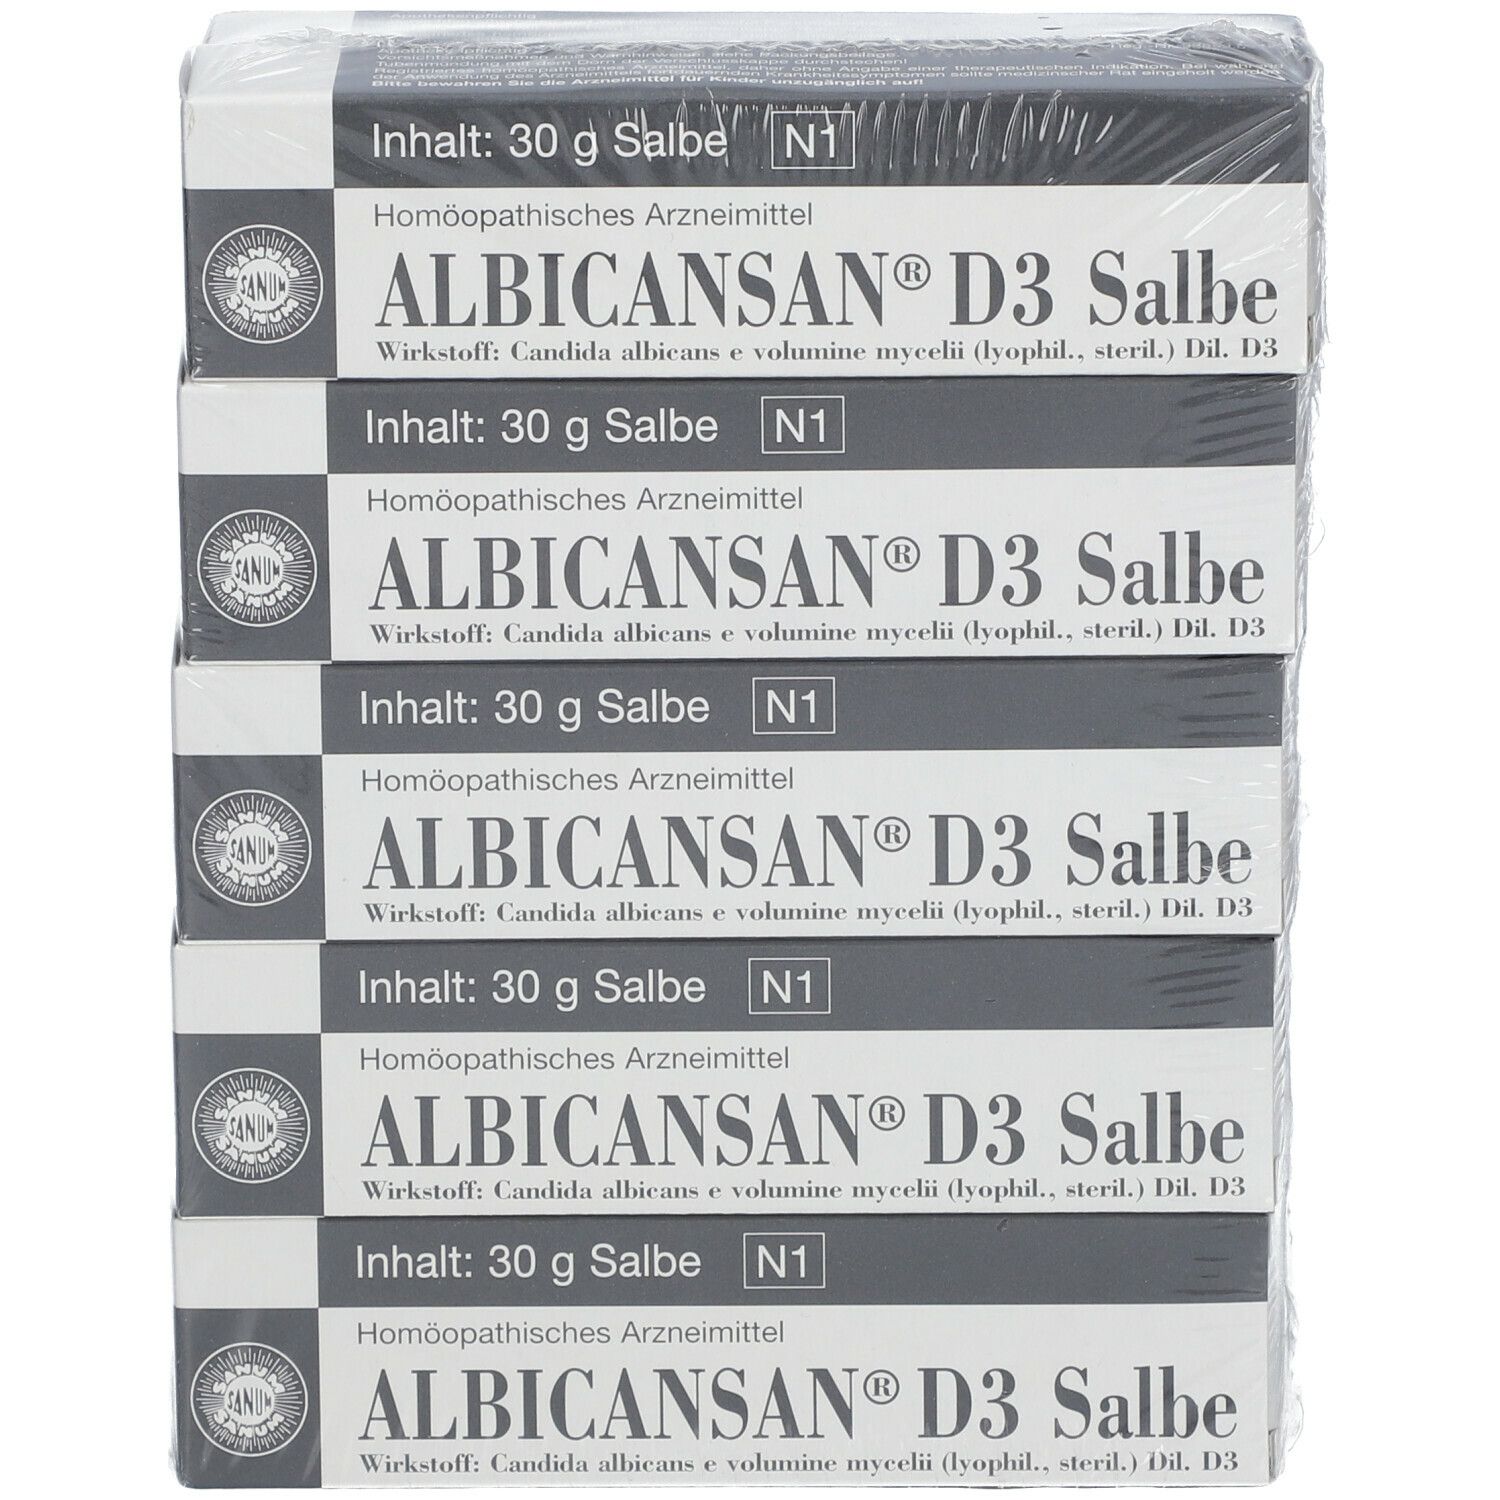 Albicansan® D3 Salbe